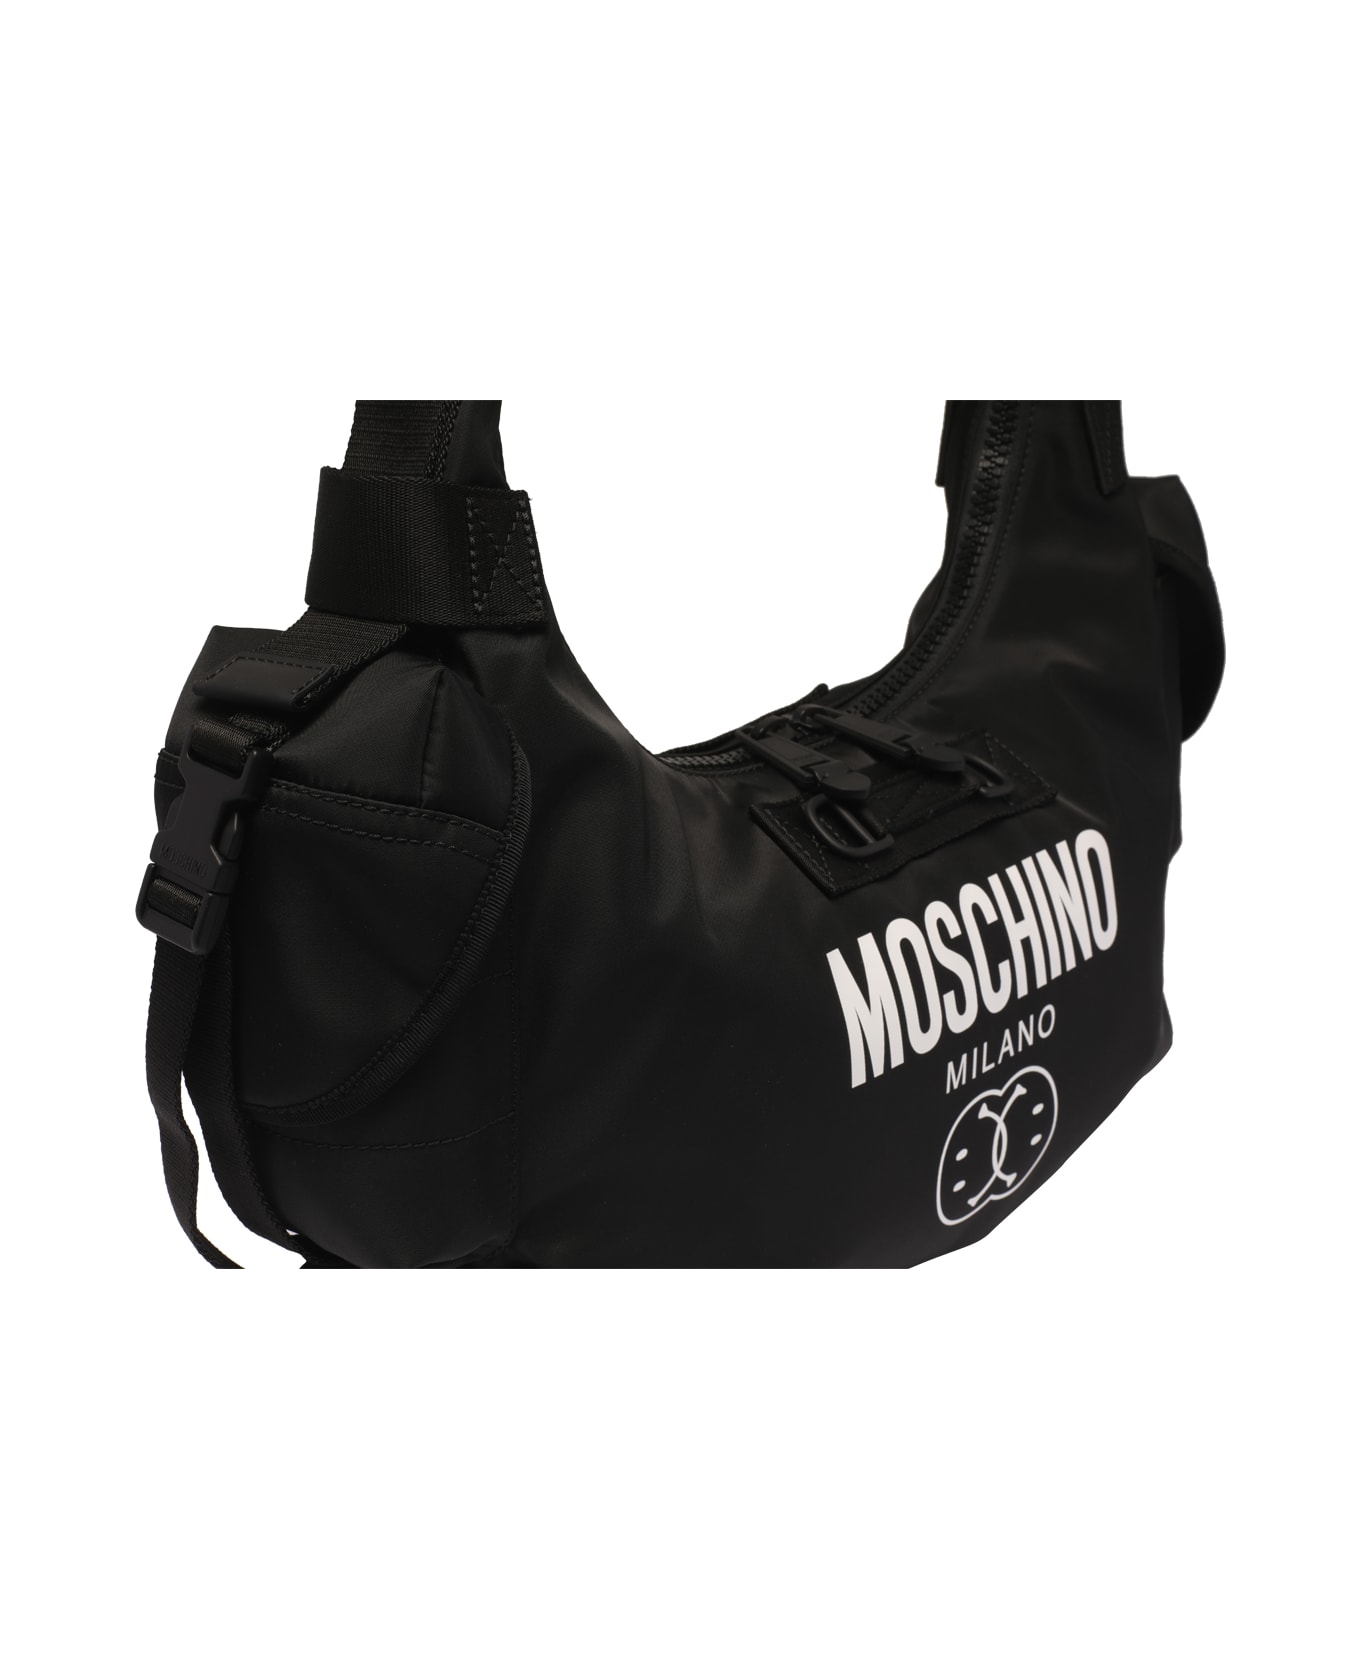 Moschino Double Smiley Hobo Bag - Black